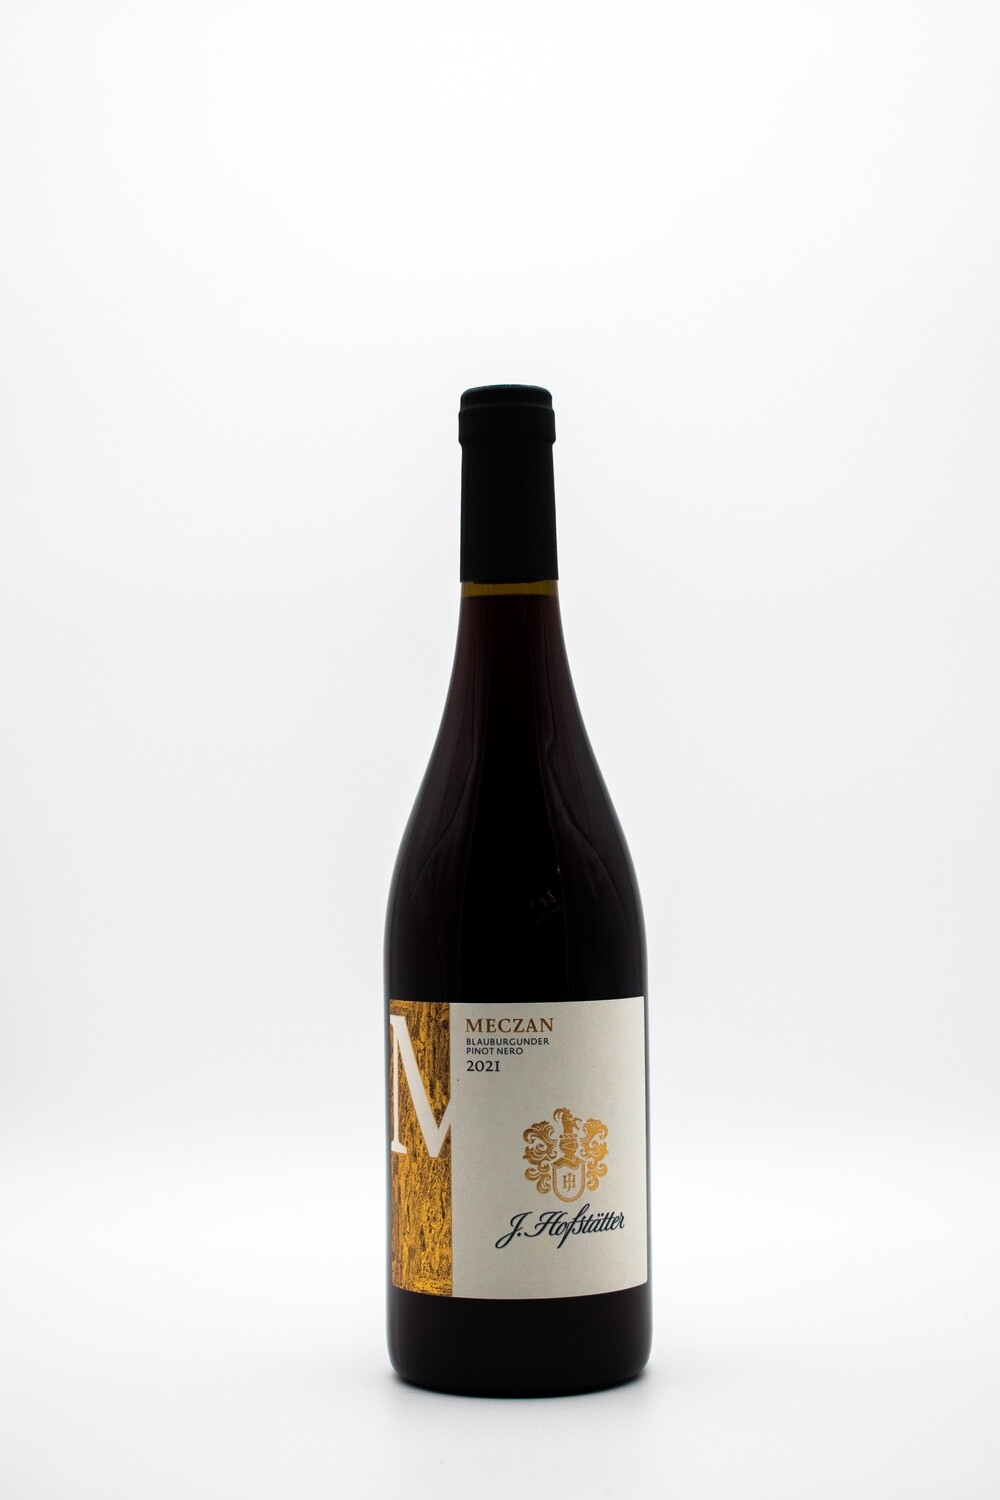 Hofstatter - Meczan Pinot Nero - 2021